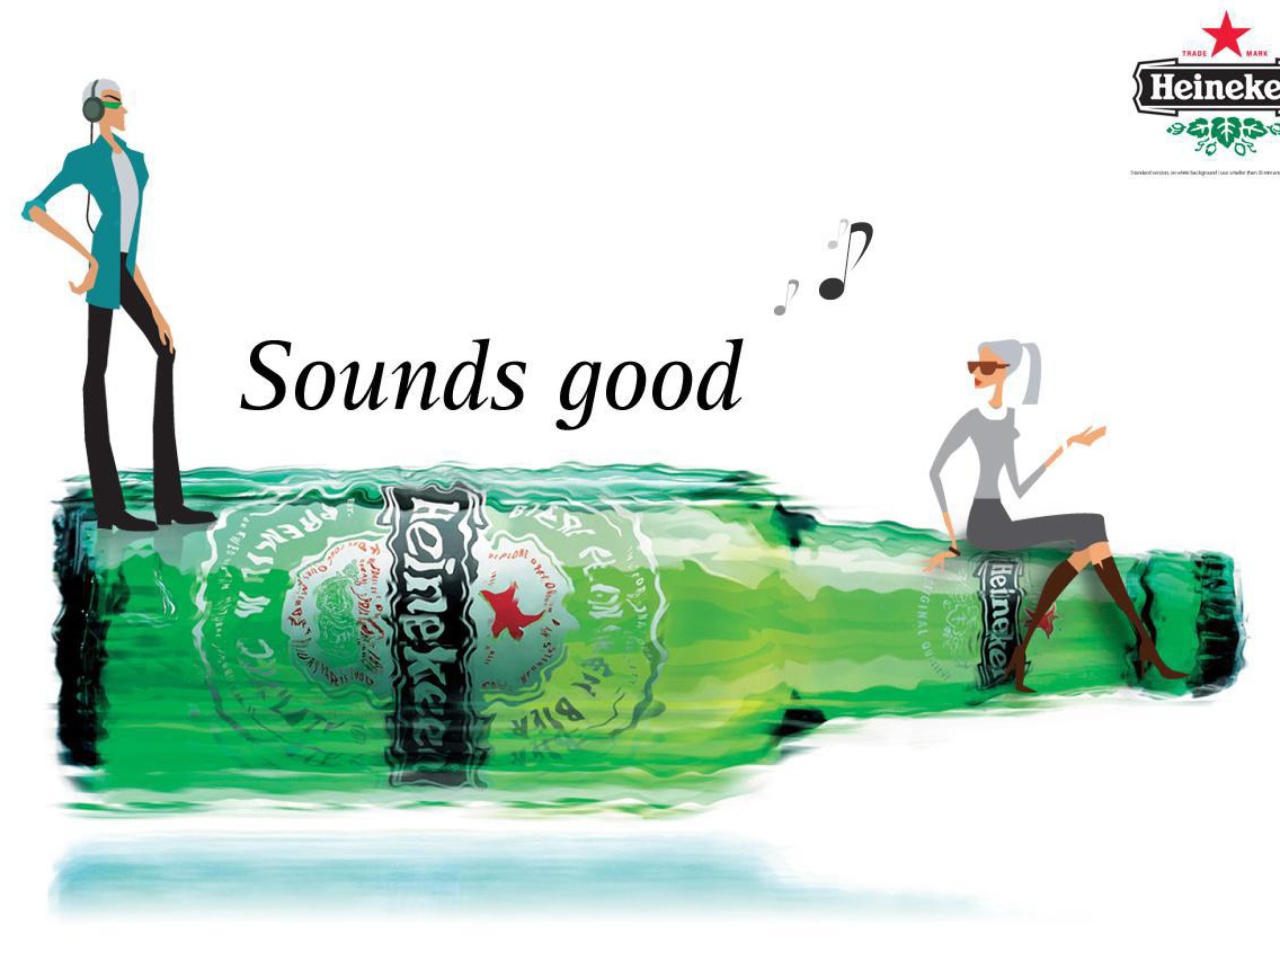 Heineken, Sounds good screenshot #1 1280x960